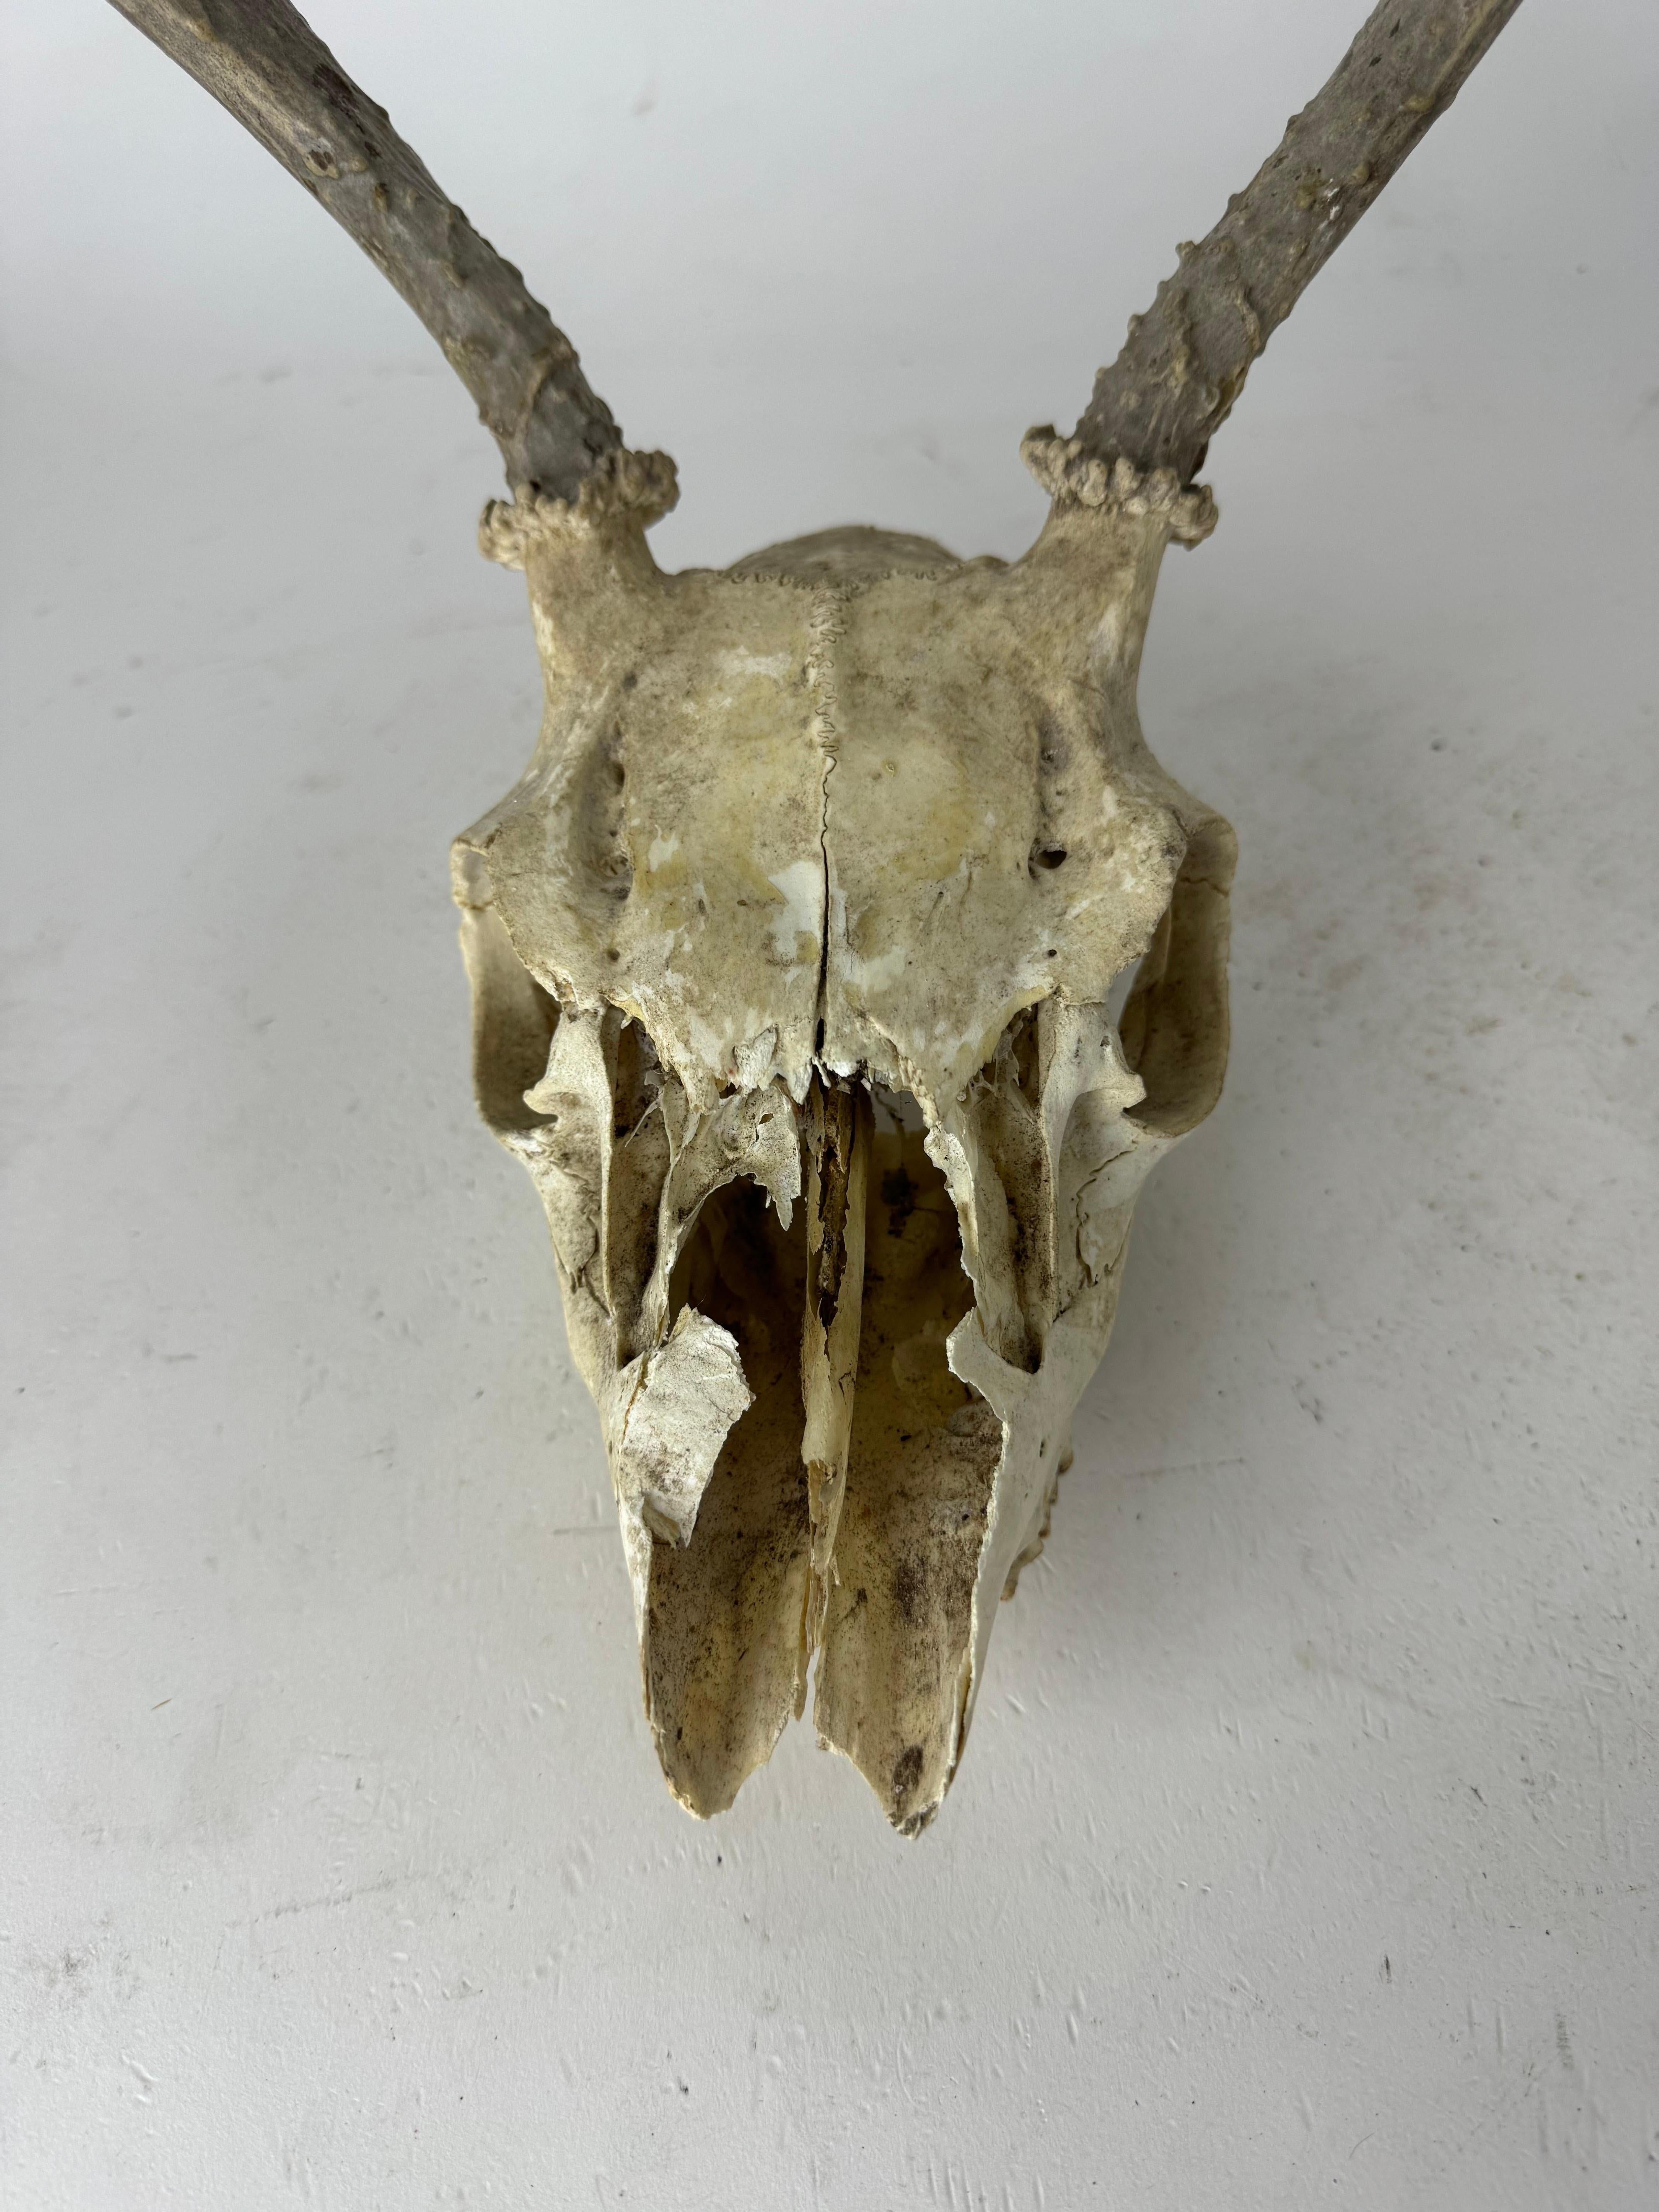 Vintage Deer Skull with Antlers, This is a Unique Decor Piece for Sale ! 

Libérez le charme rustique avec notre crâne de cerf vintage unique avec des bois, parfait pour ajouter du caractère à votre espace. Cette pièce intrigante met en valeur la